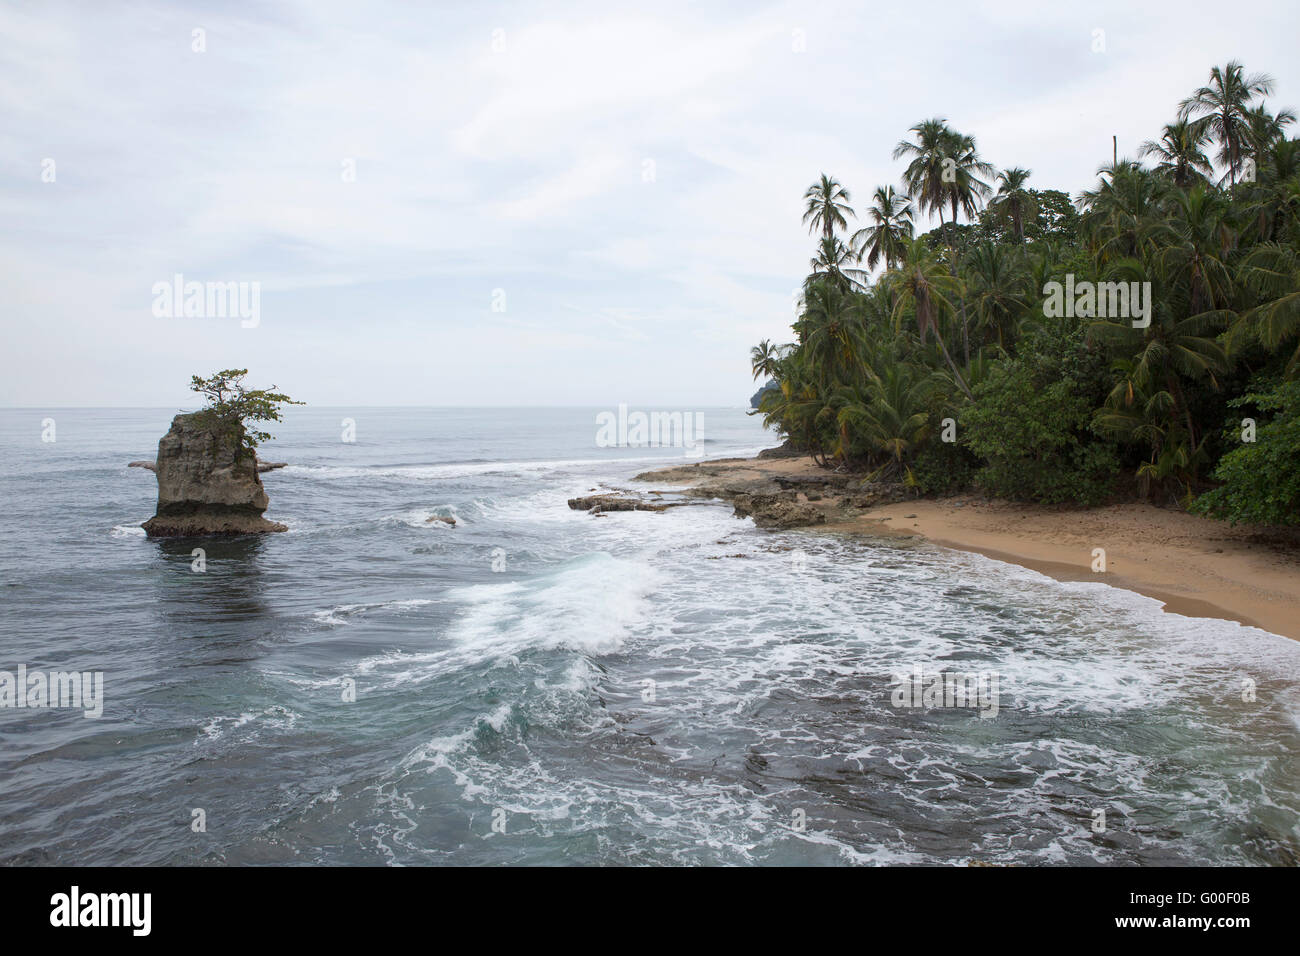 Ein Felsvorsprung aus vulkanischem Gestein im karibischen Meer vor Playa Manzanillo in Costa Rica. Stockfoto